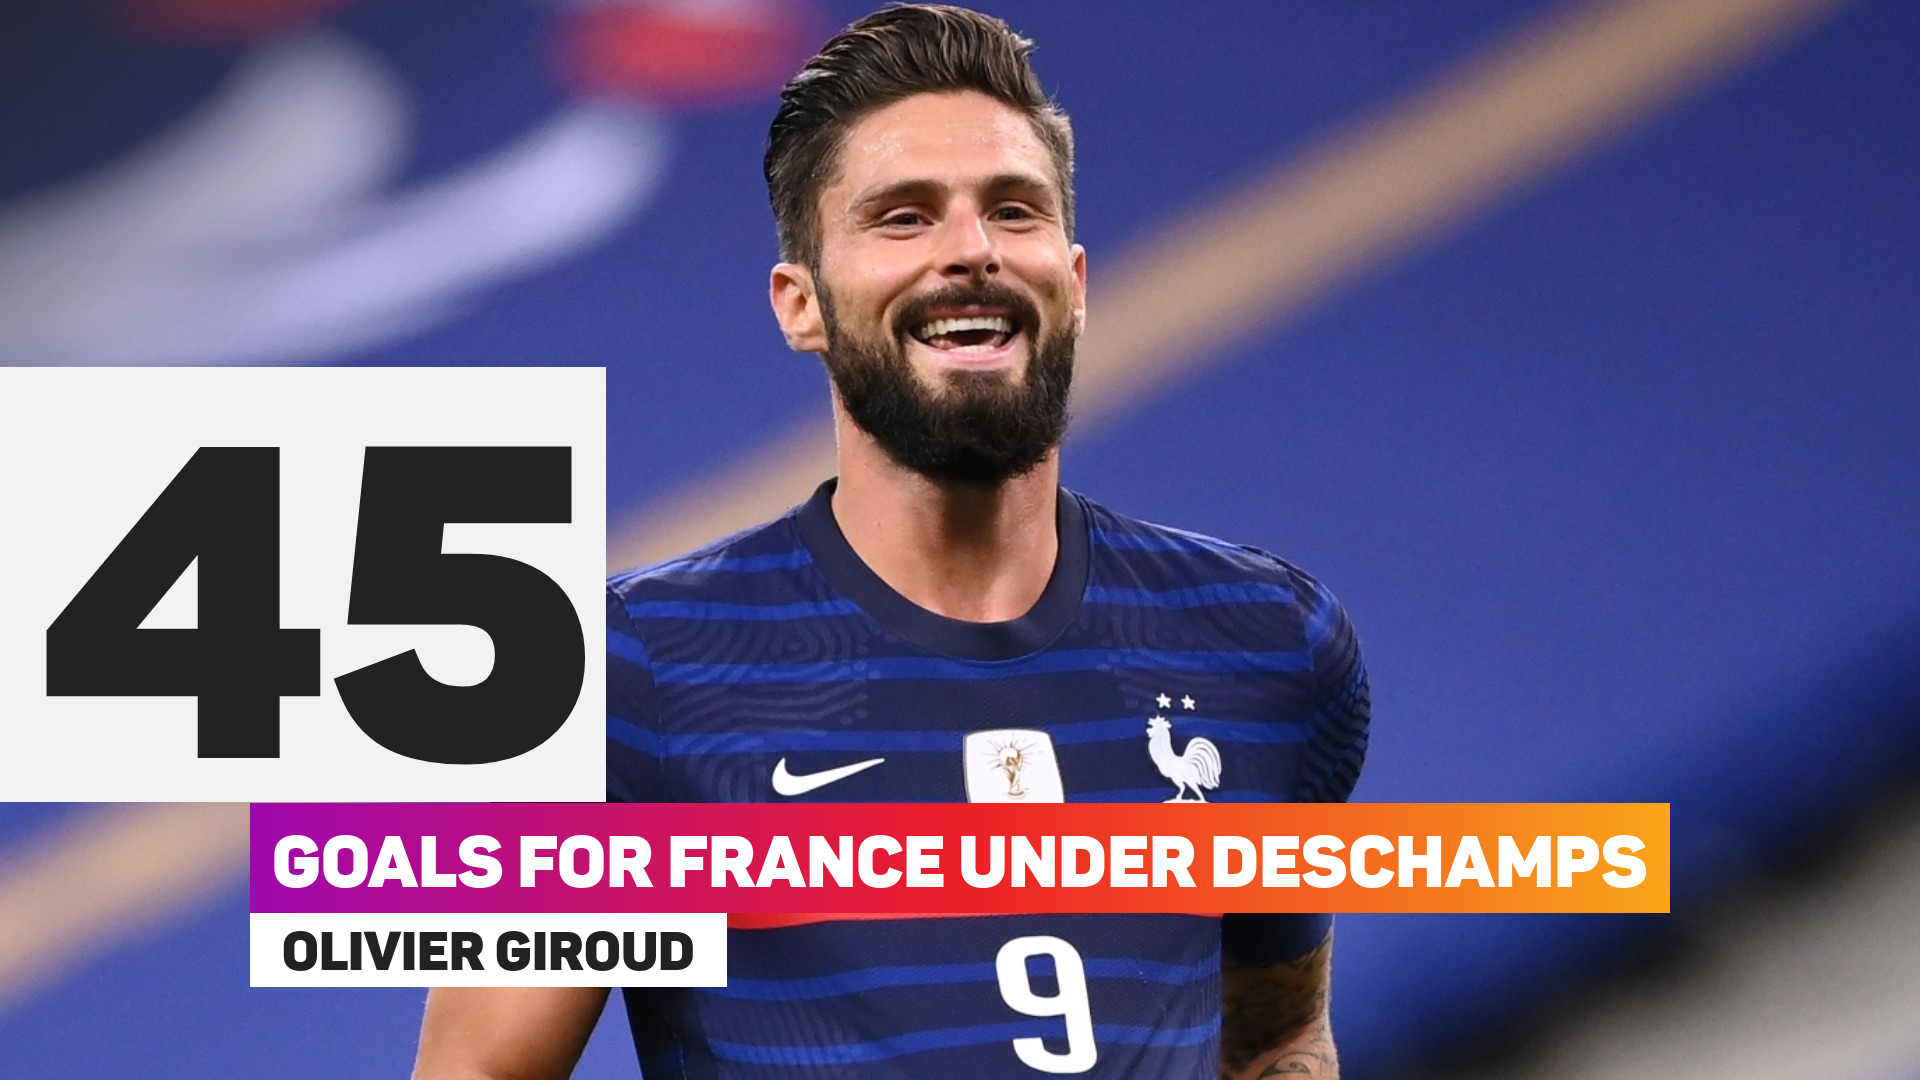 Olivier Giroud goals under Deschamps